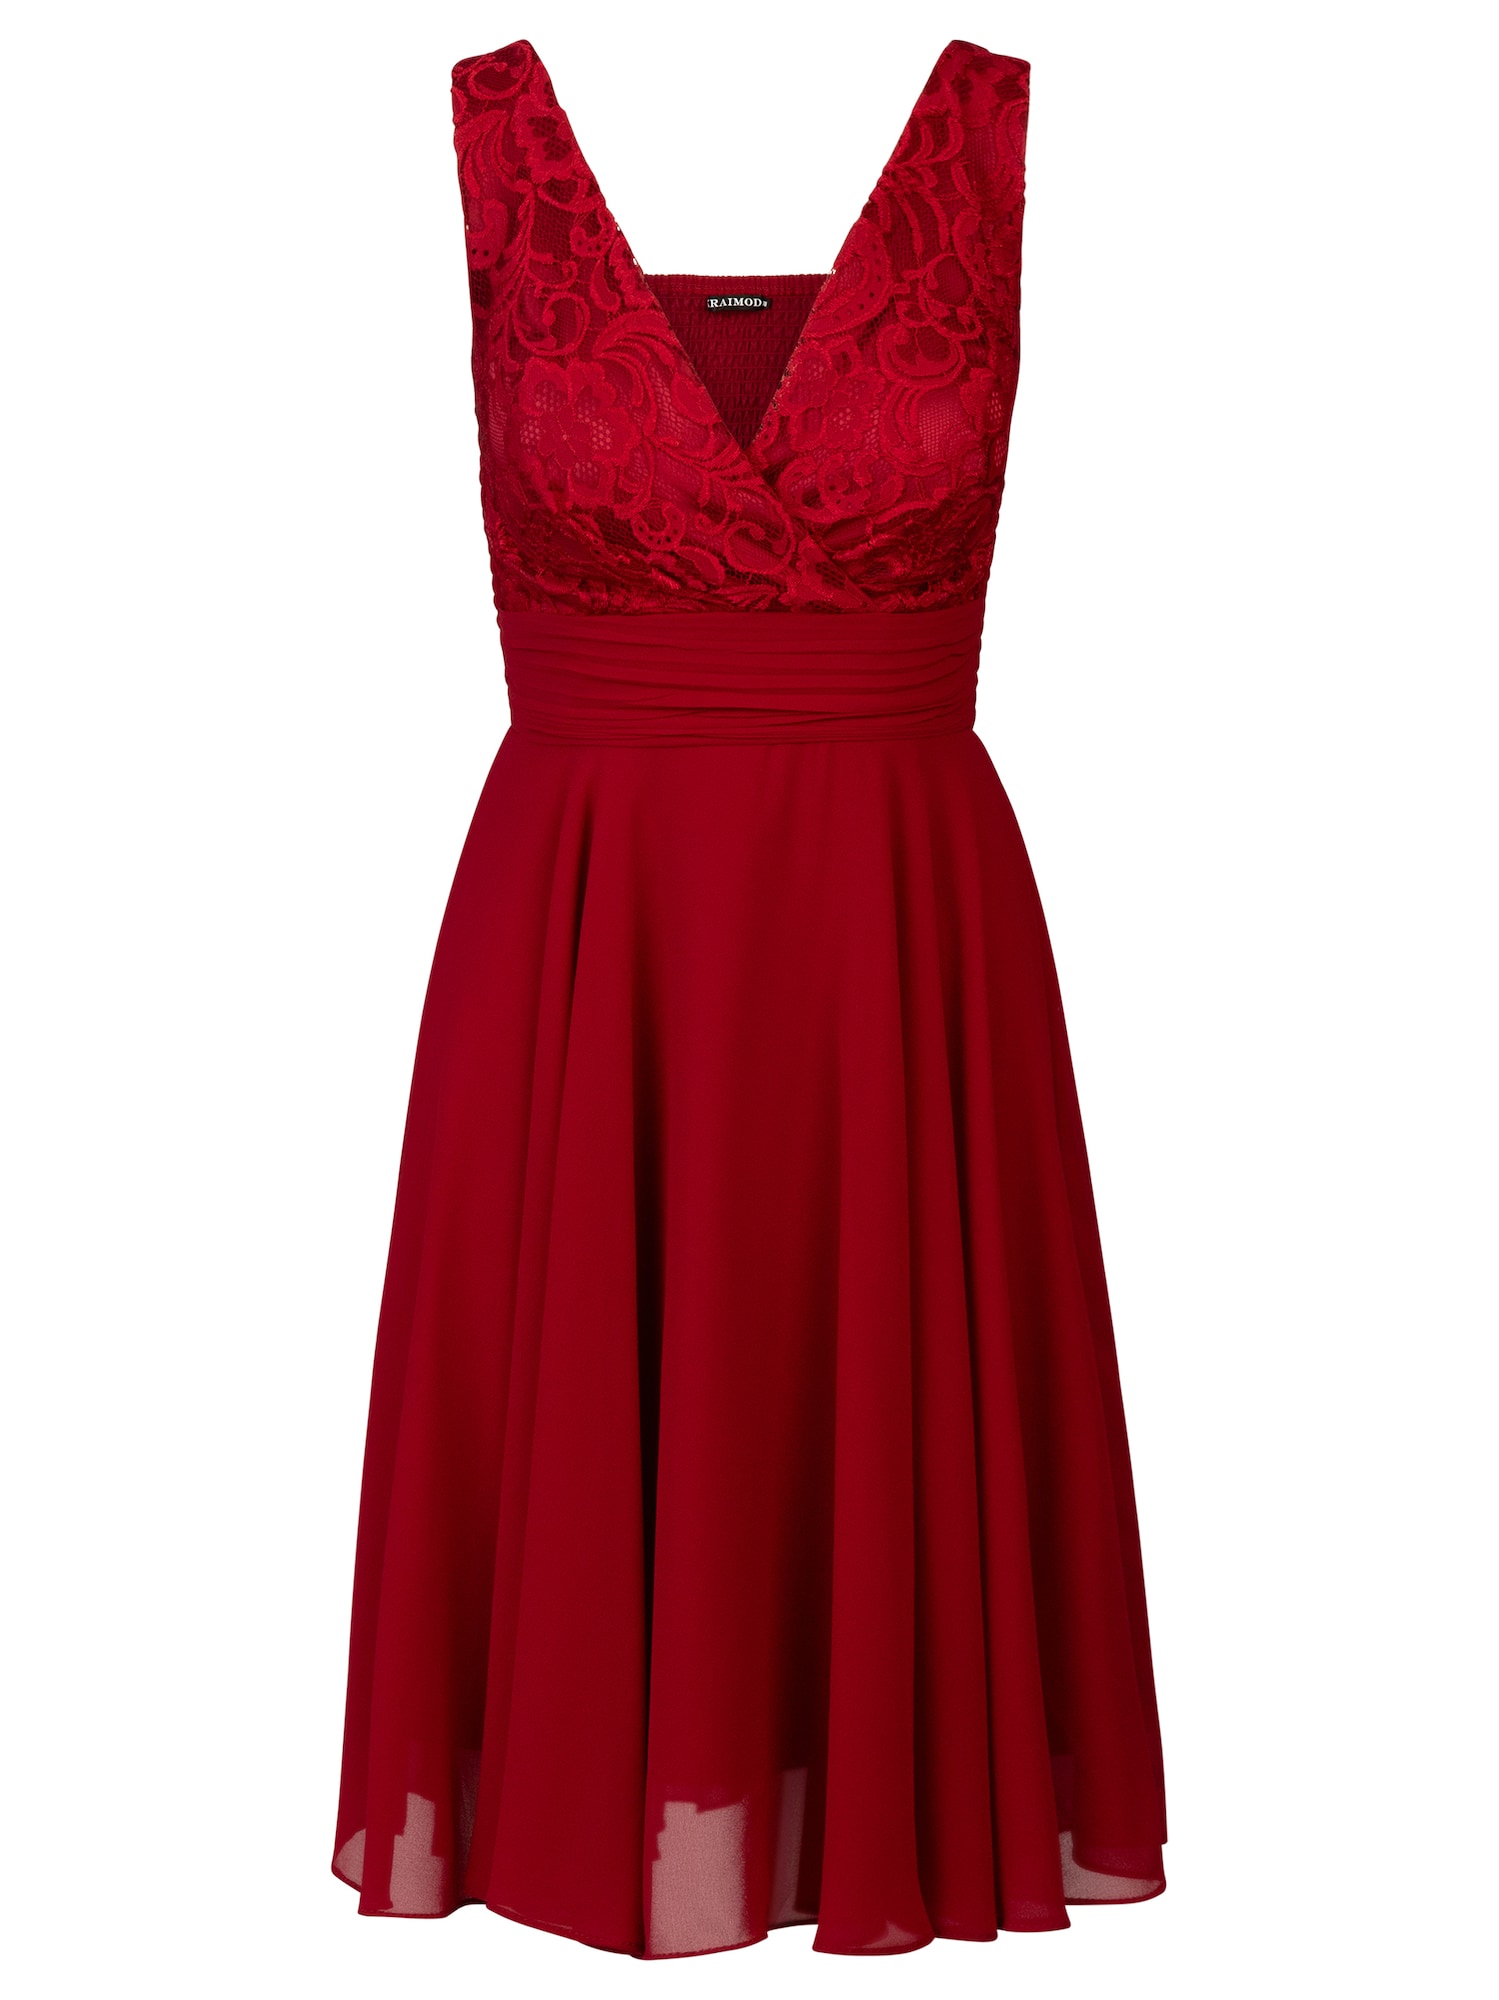 Kraimod Kokteilinė suknelė karmino raudona